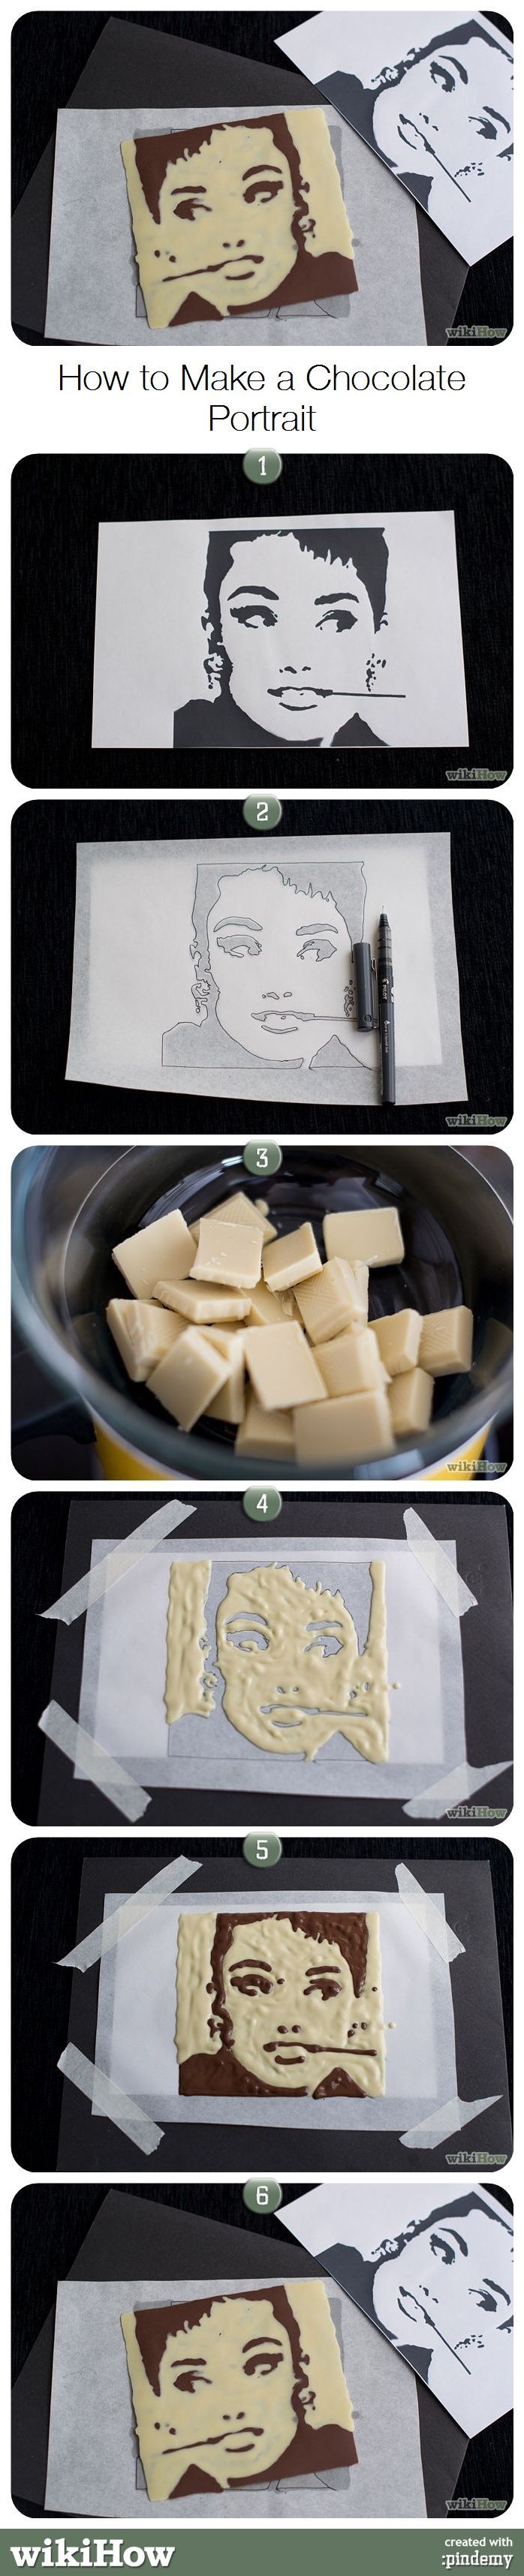 How to Make a Chocolate Por